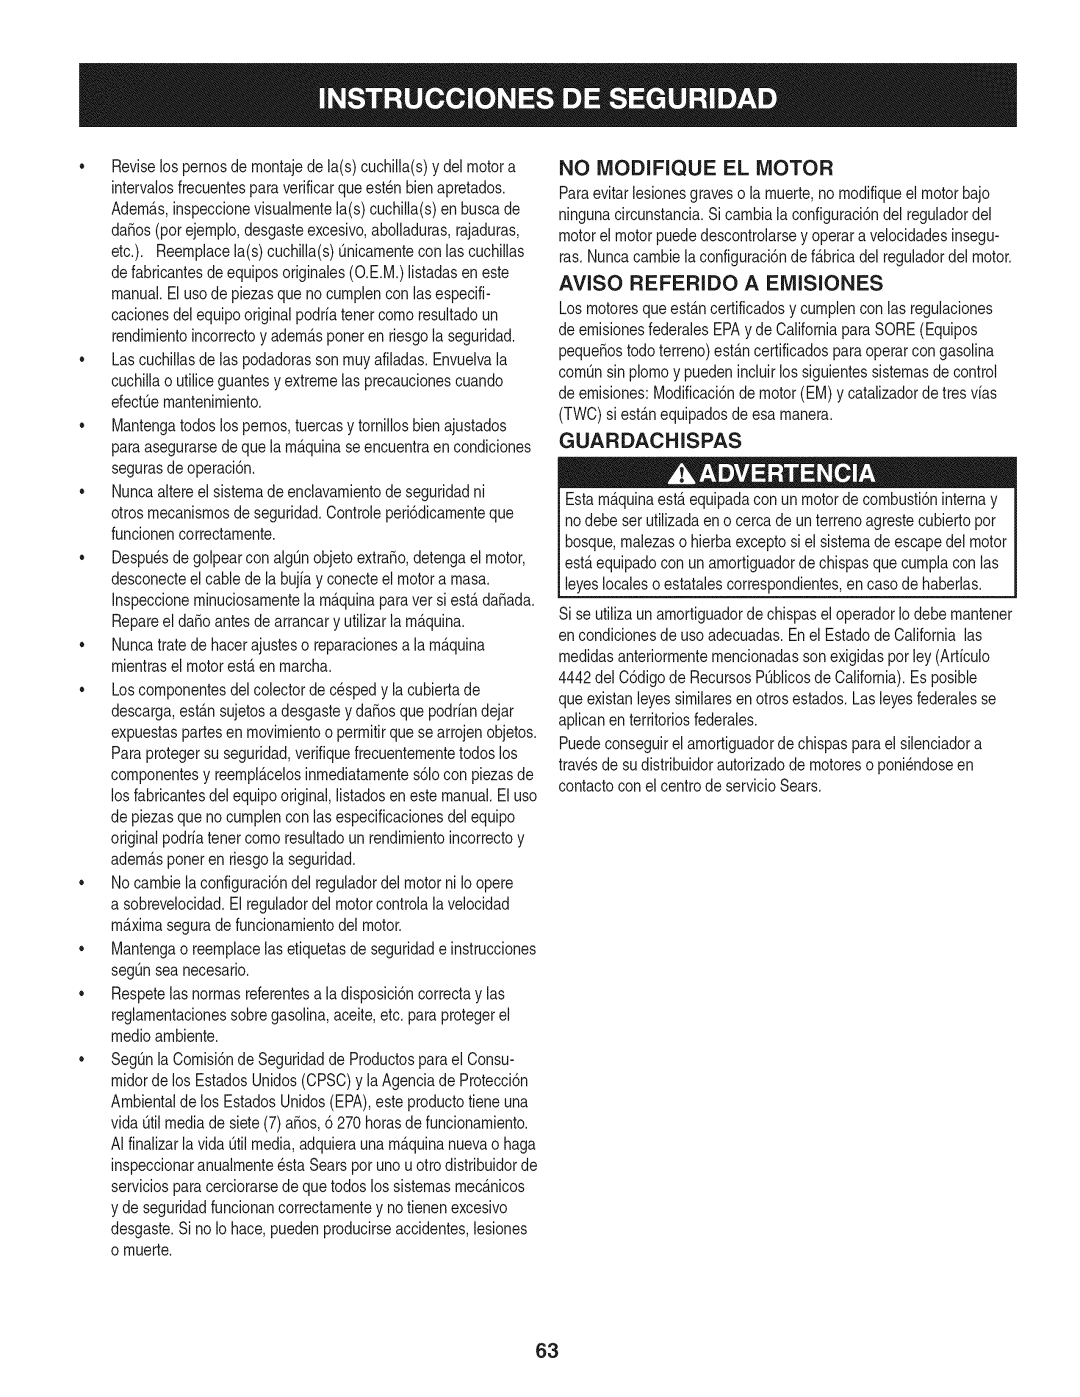 Craftsman 247.28902 manual No Modifique El Motor, Aviso Referido A Emisiones, Guardachispas 